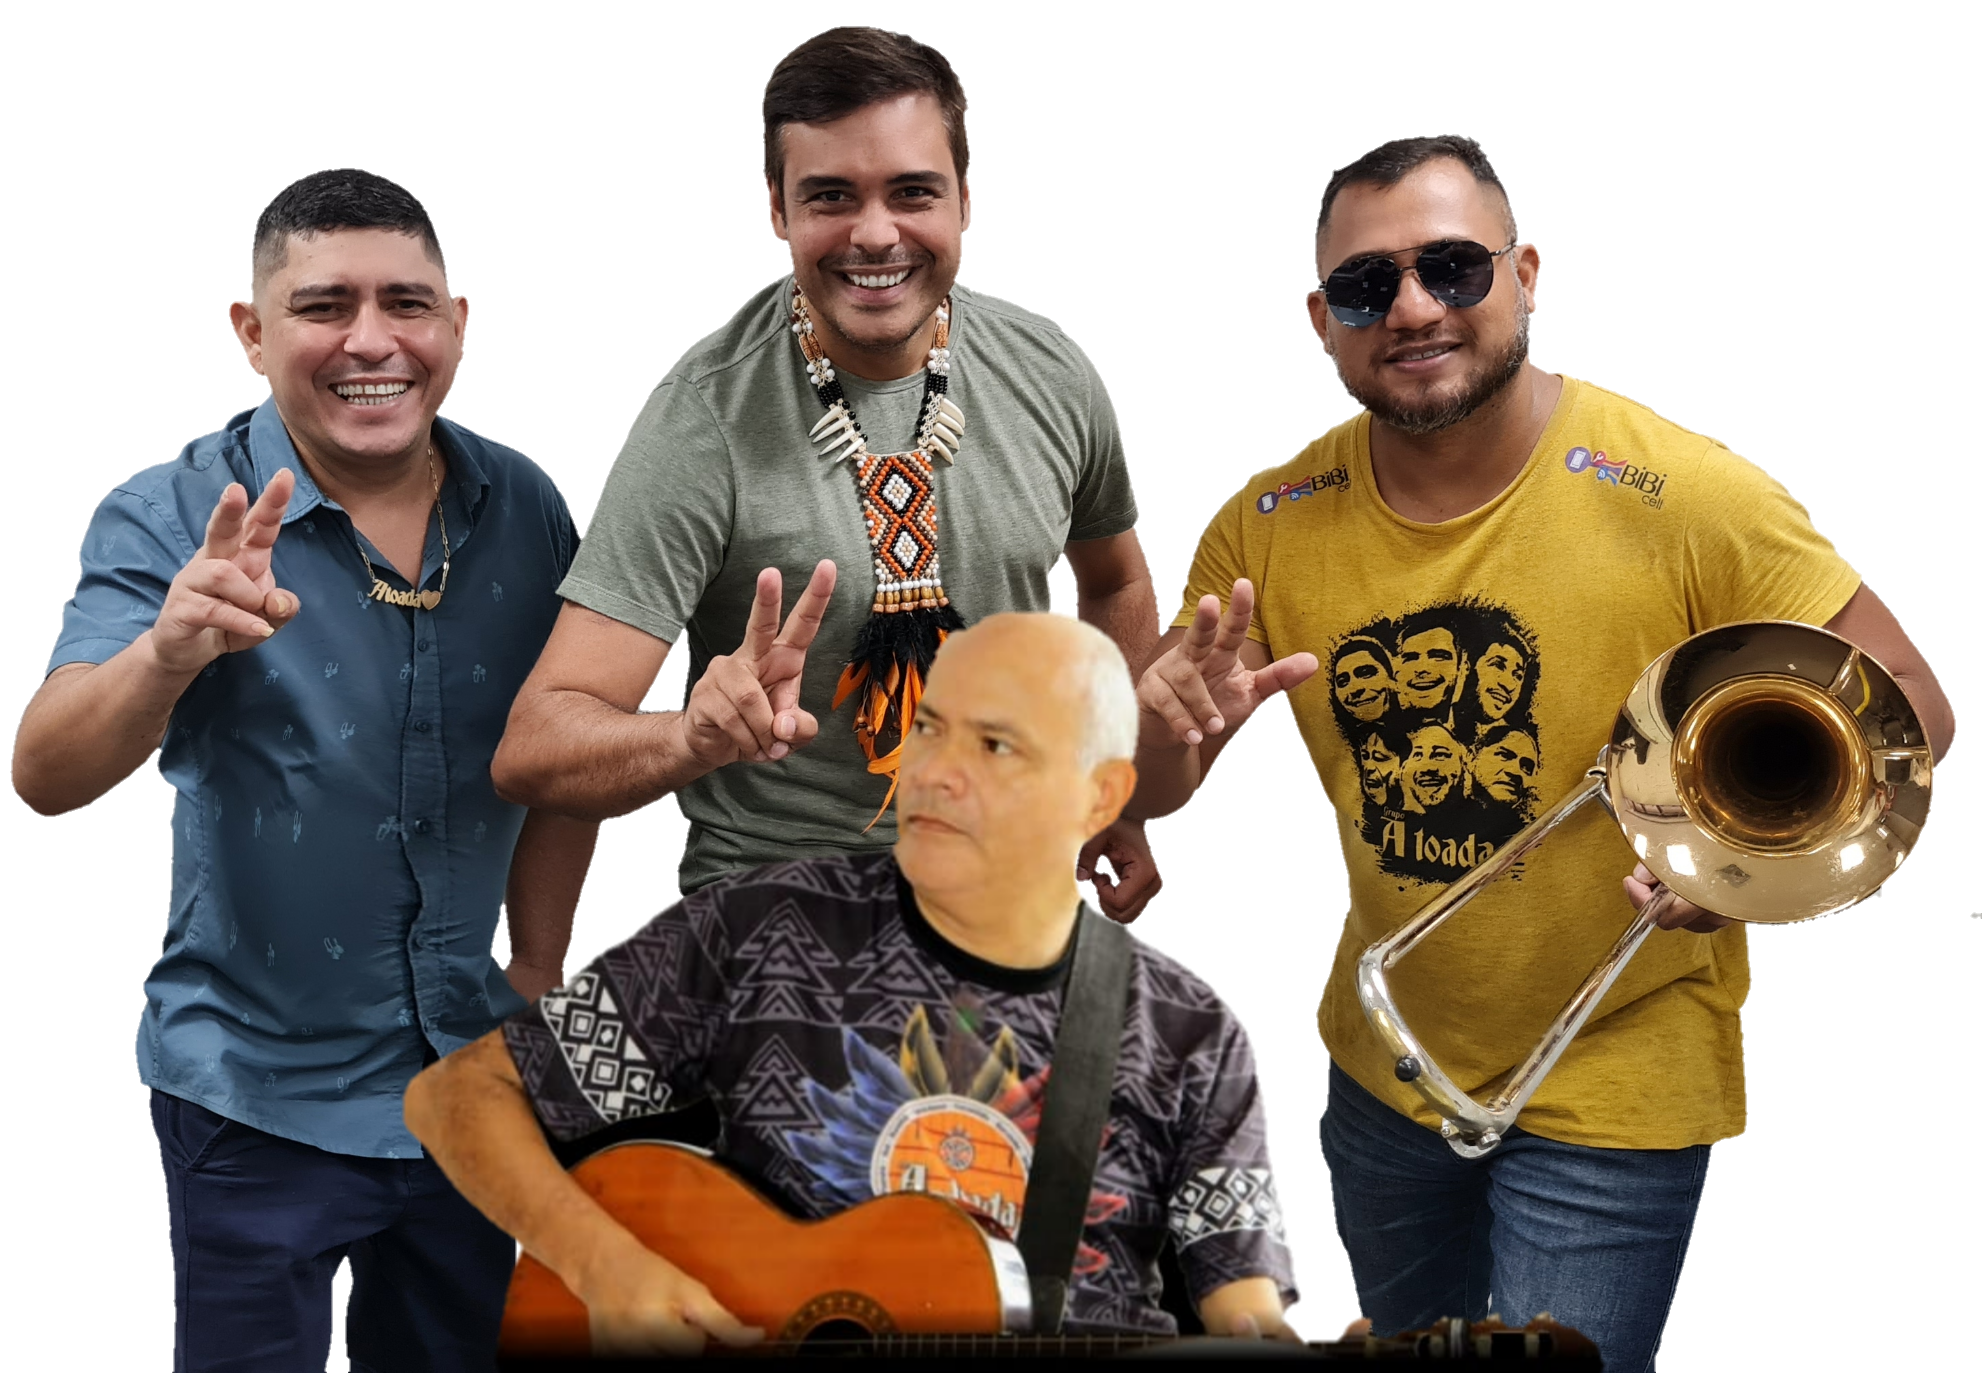 Luar de Uaicurapá traz programação com toadas, forró, samba e pop rock no fim de semana